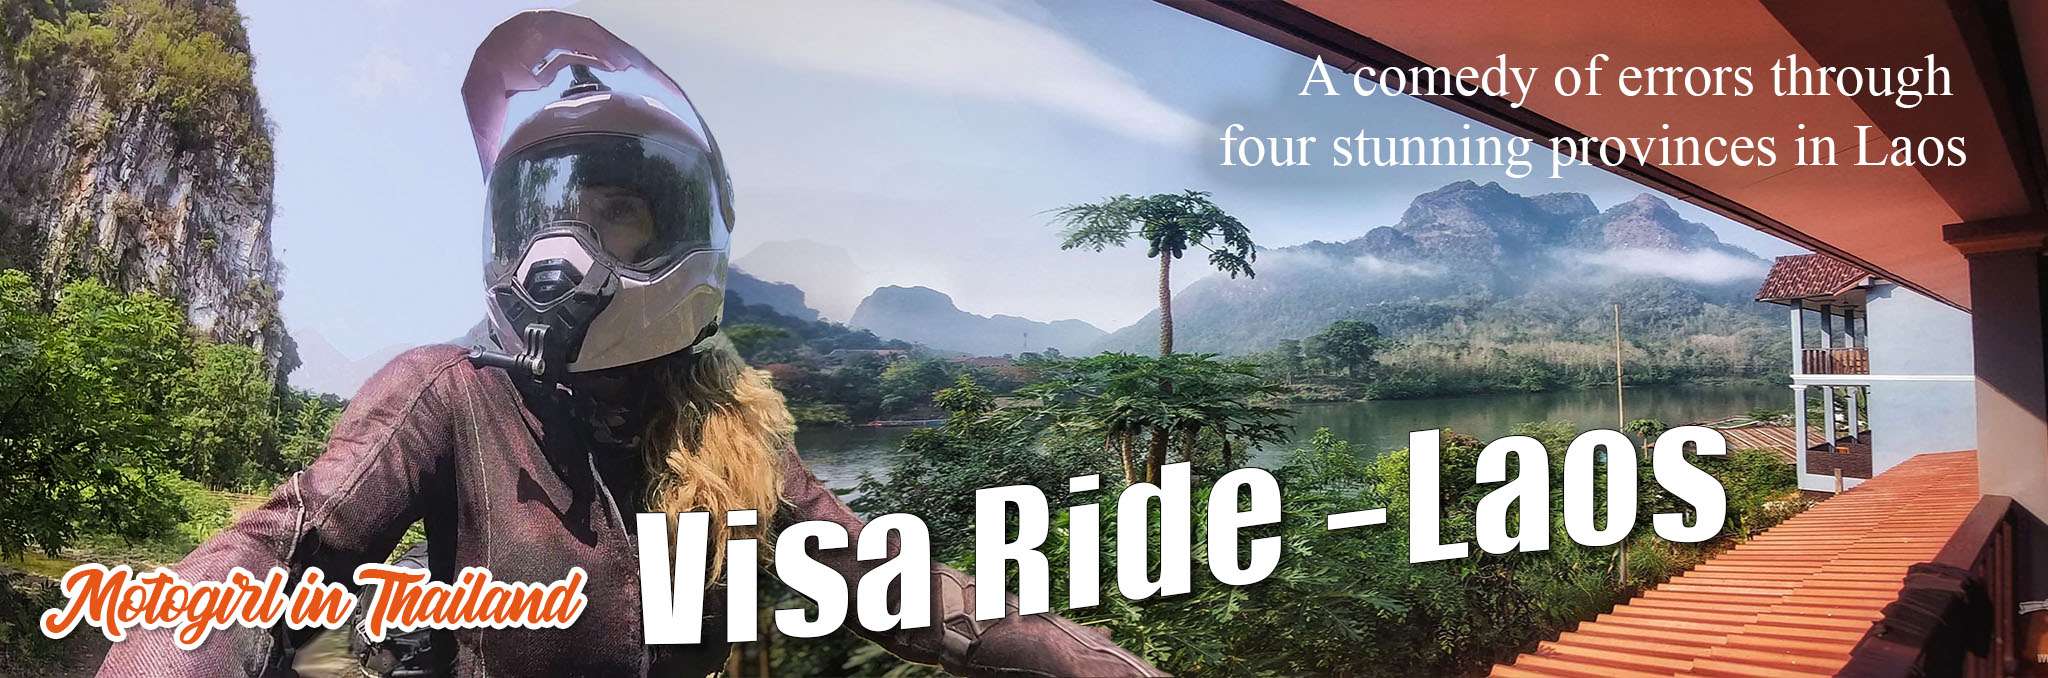 Laos Visa Ride